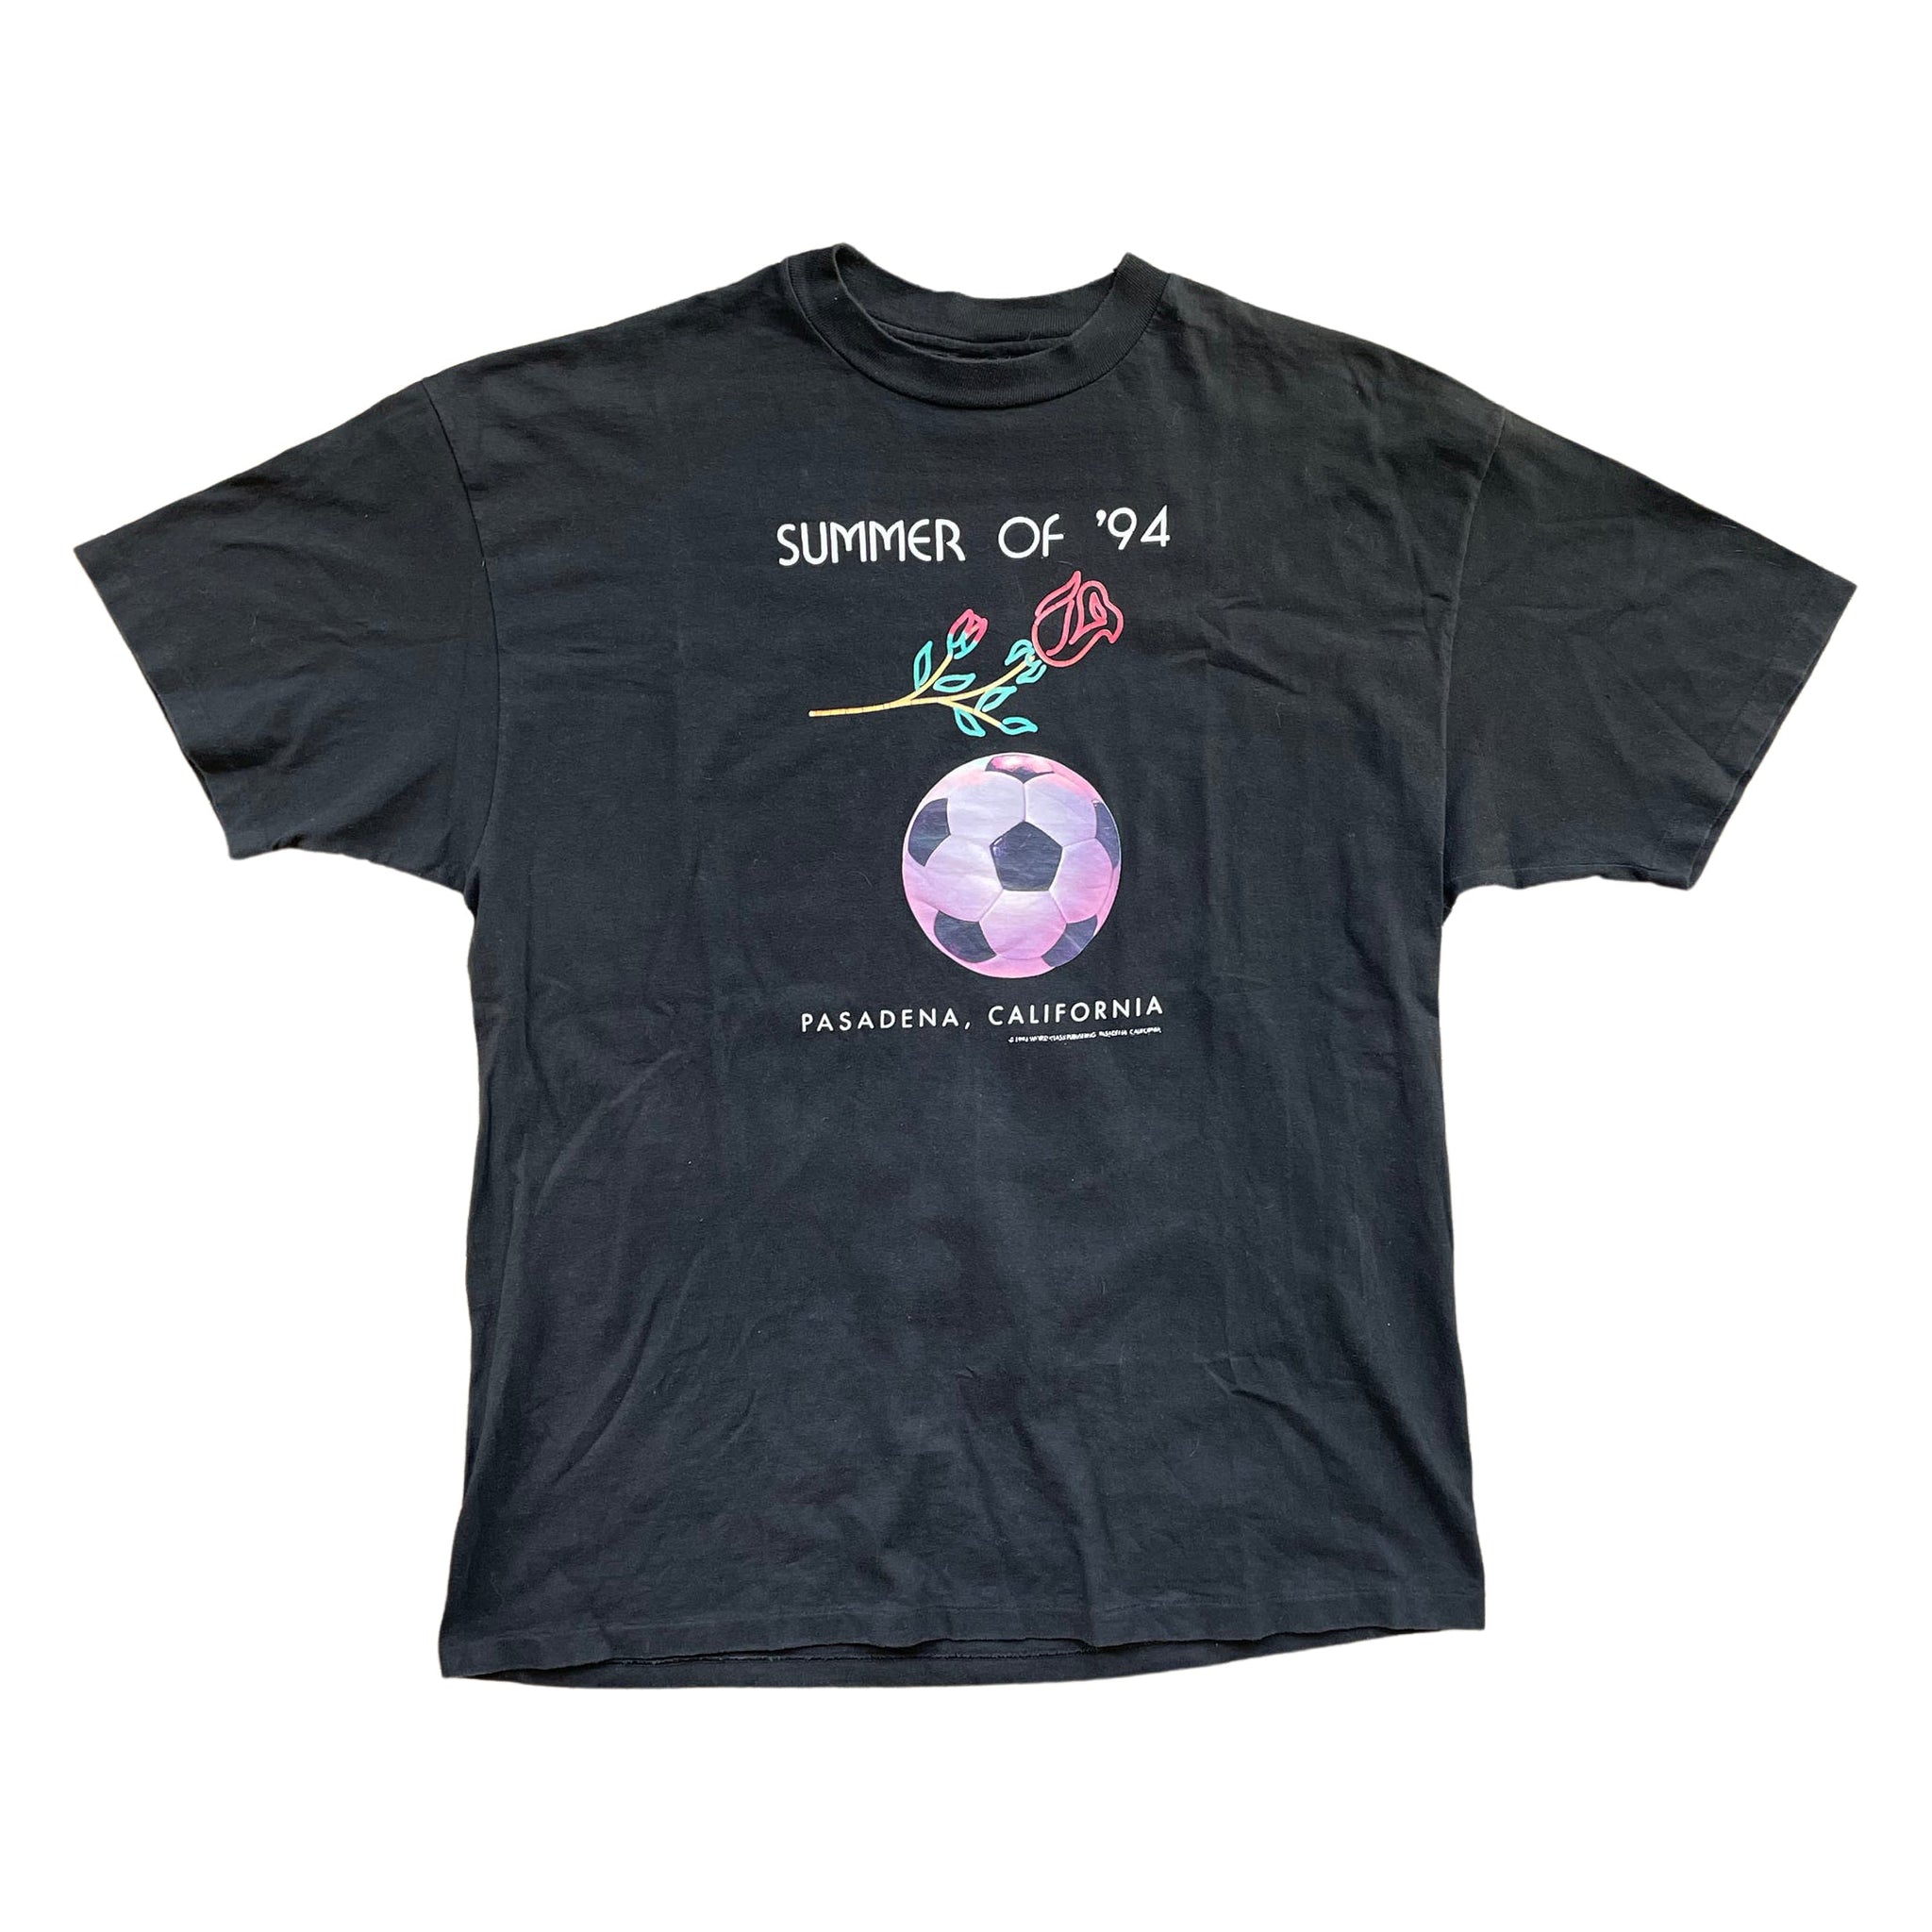 Summer Of '94 "Rose" T-Shirt - XL